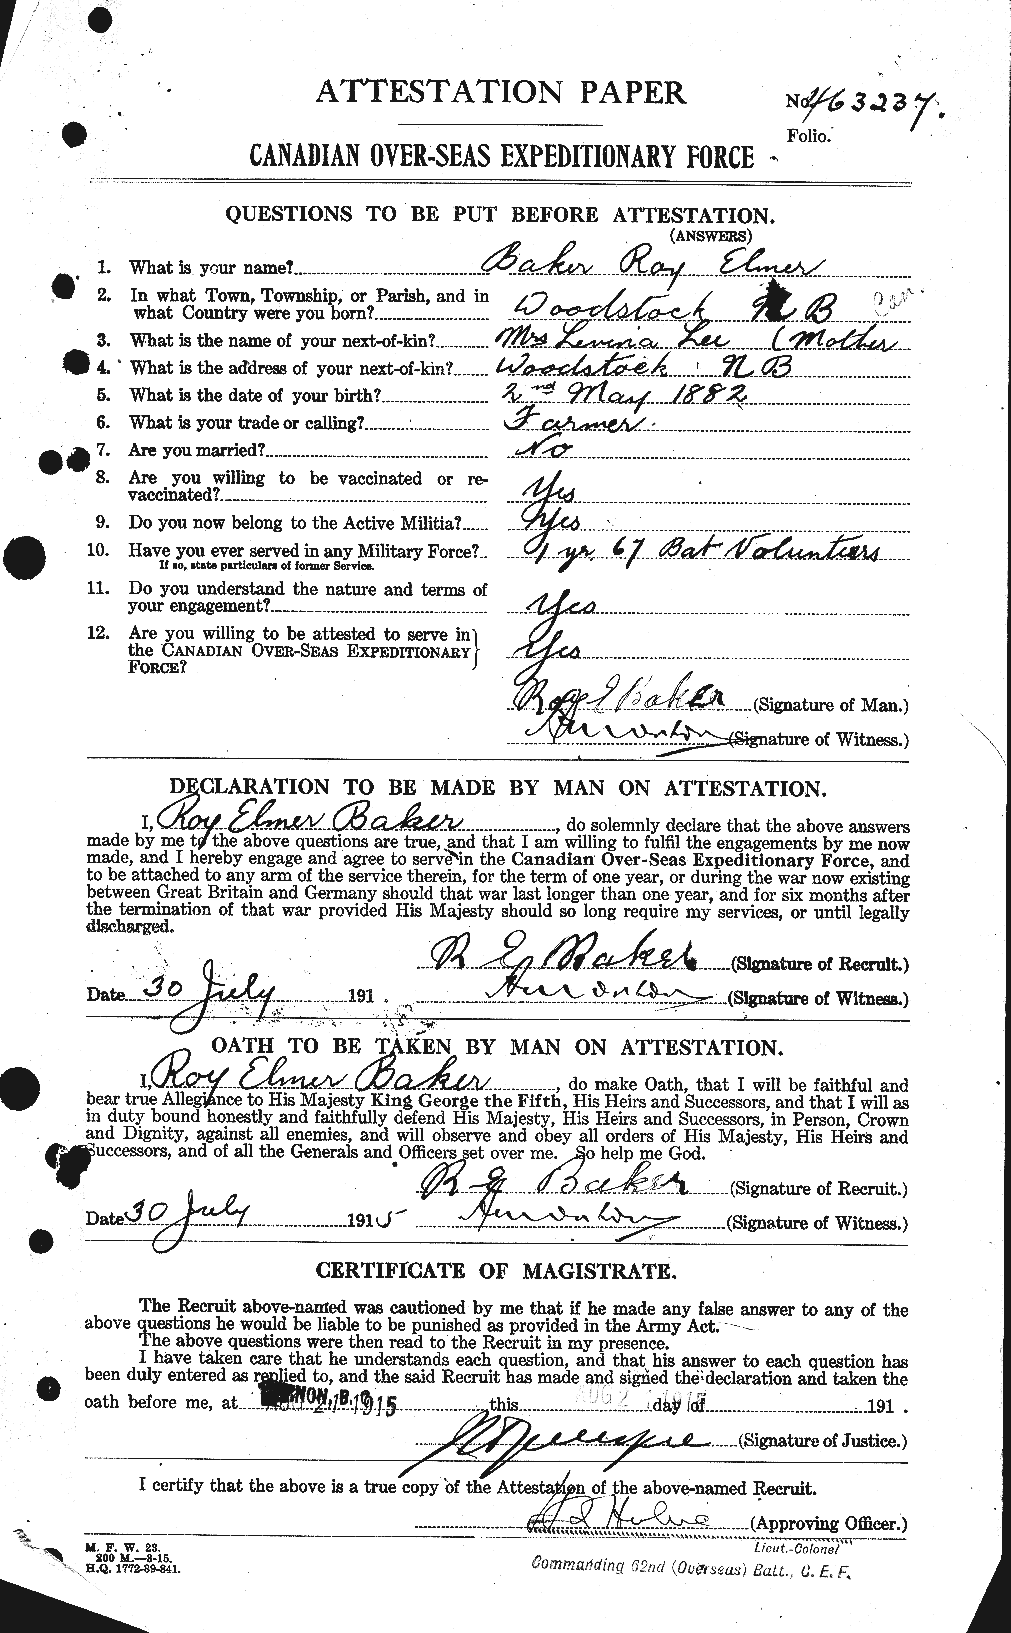 Dossiers du Personnel de la Première Guerre mondiale - CEC 221501a